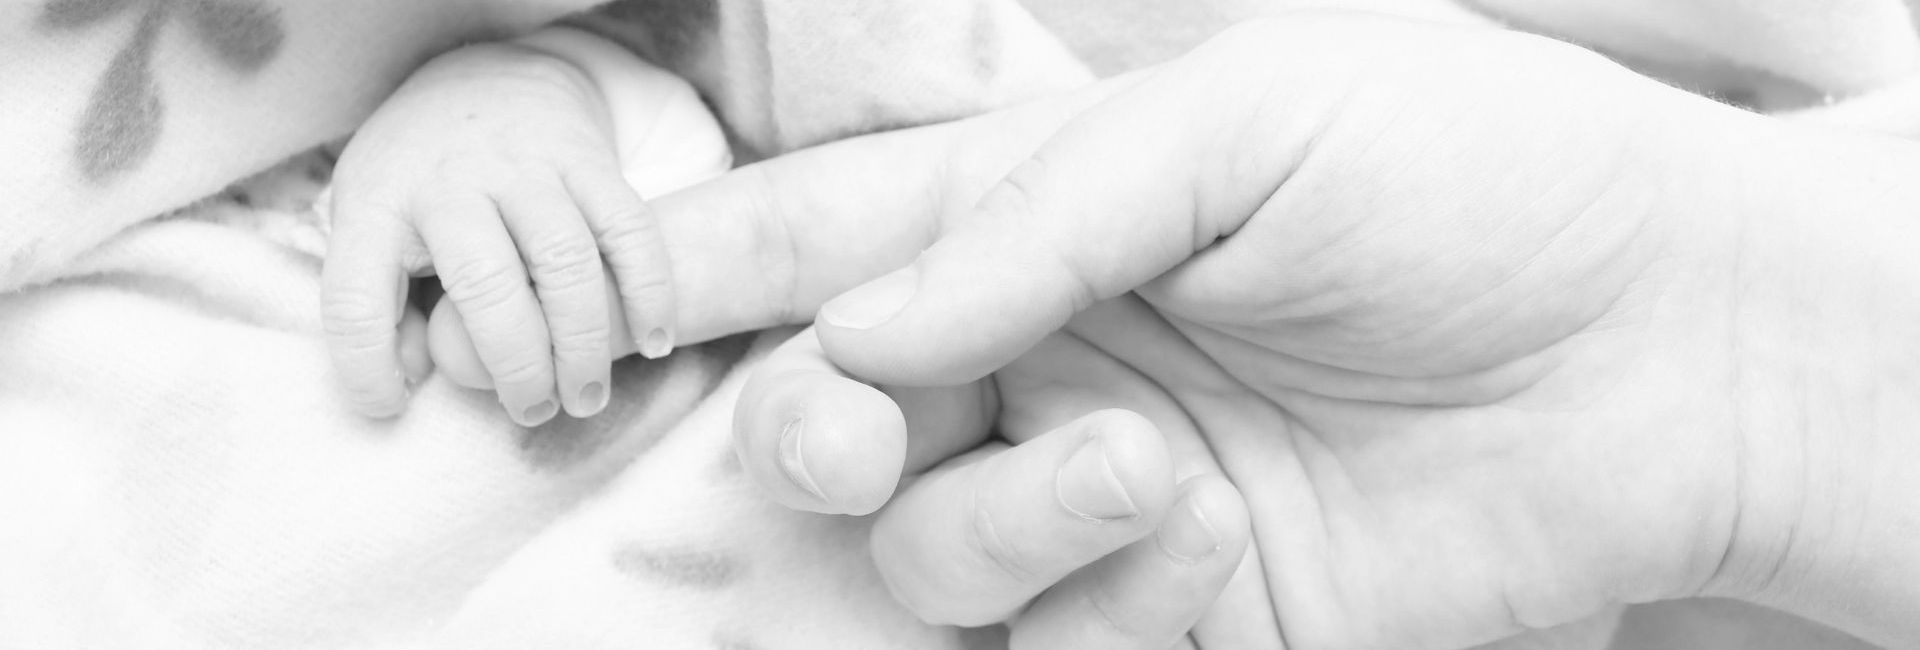 main de bébé autour d'un doigt d'adulte